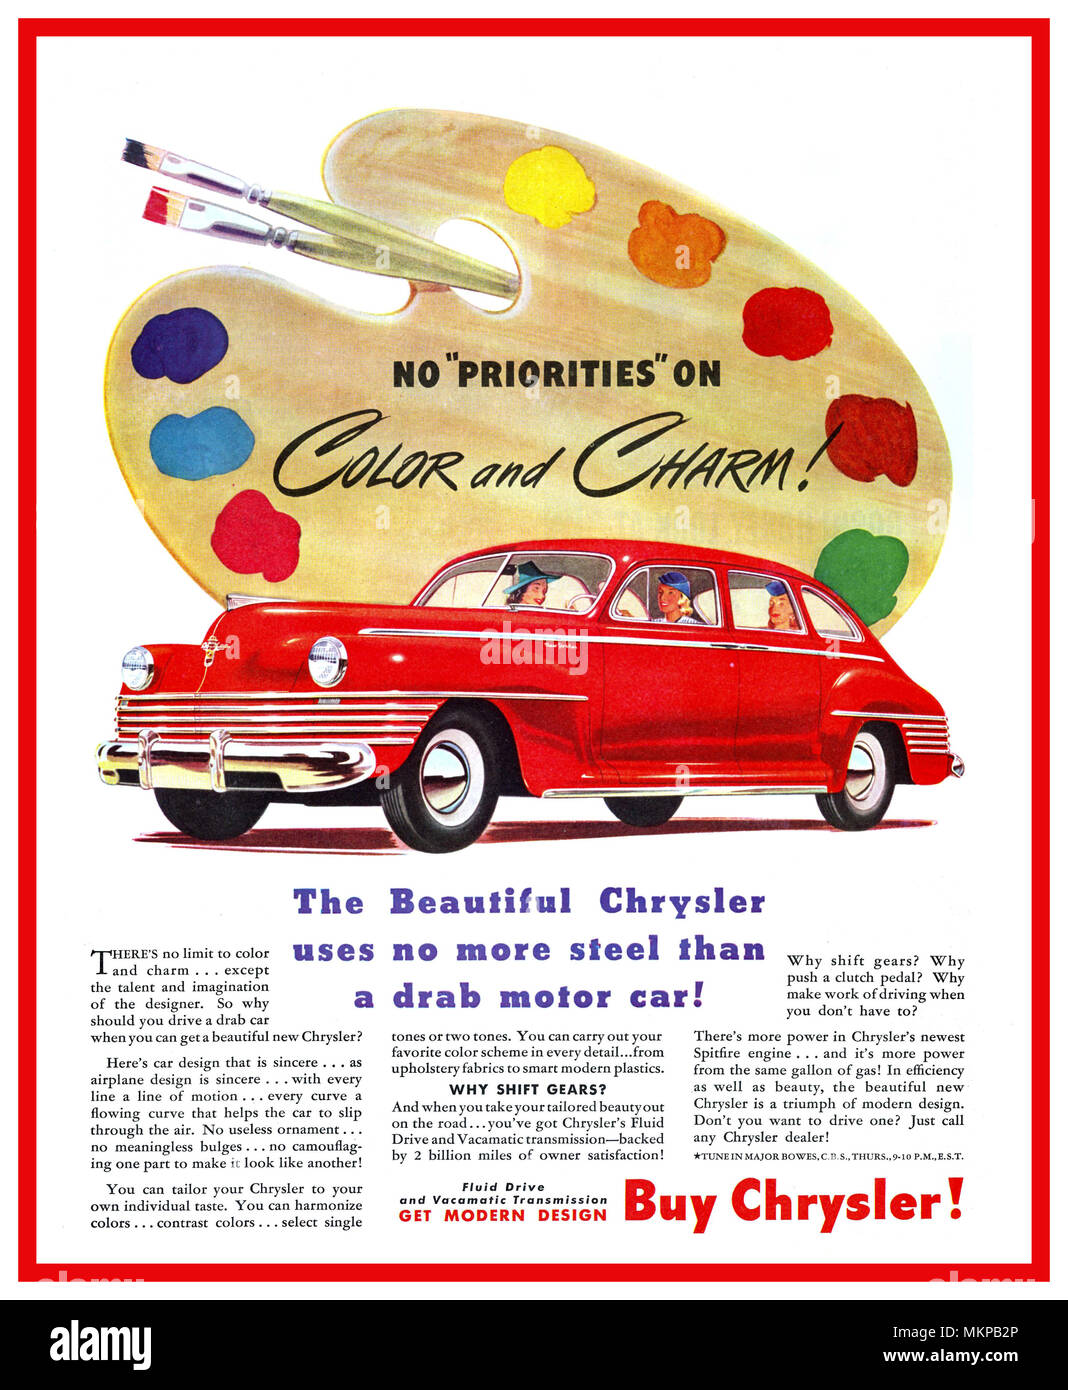 1940's vintage americano auto prodotte durante il WW2 1942 Chrysler New Yorker Sedan 'nessuna priorità sul colore e fascino' ACQUISTARE CHRYSLER 'bella Chrysler non utilizza più di acciaio una squallida autovettura' Foto Stock